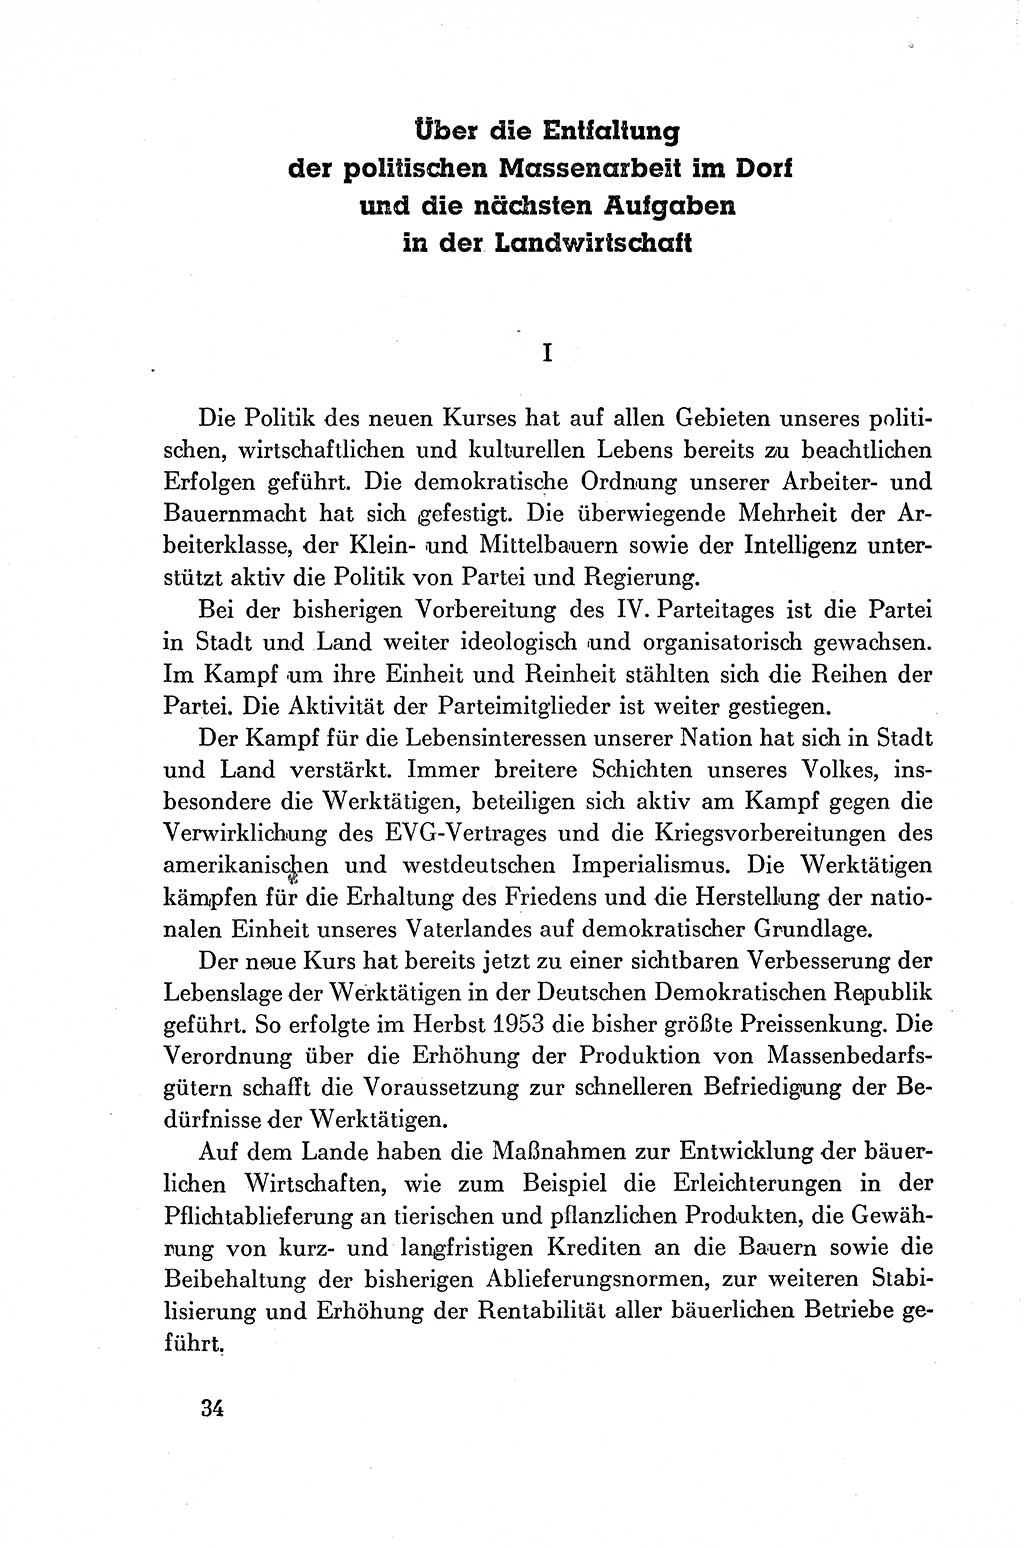 Dokumente der Sozialistischen Einheitspartei Deutschlands (SED) [Deutsche Demokratische Republik (DDR)] 1954-1955, Seite 34 (Dok. SED DDR 1954-1955, S. 34)